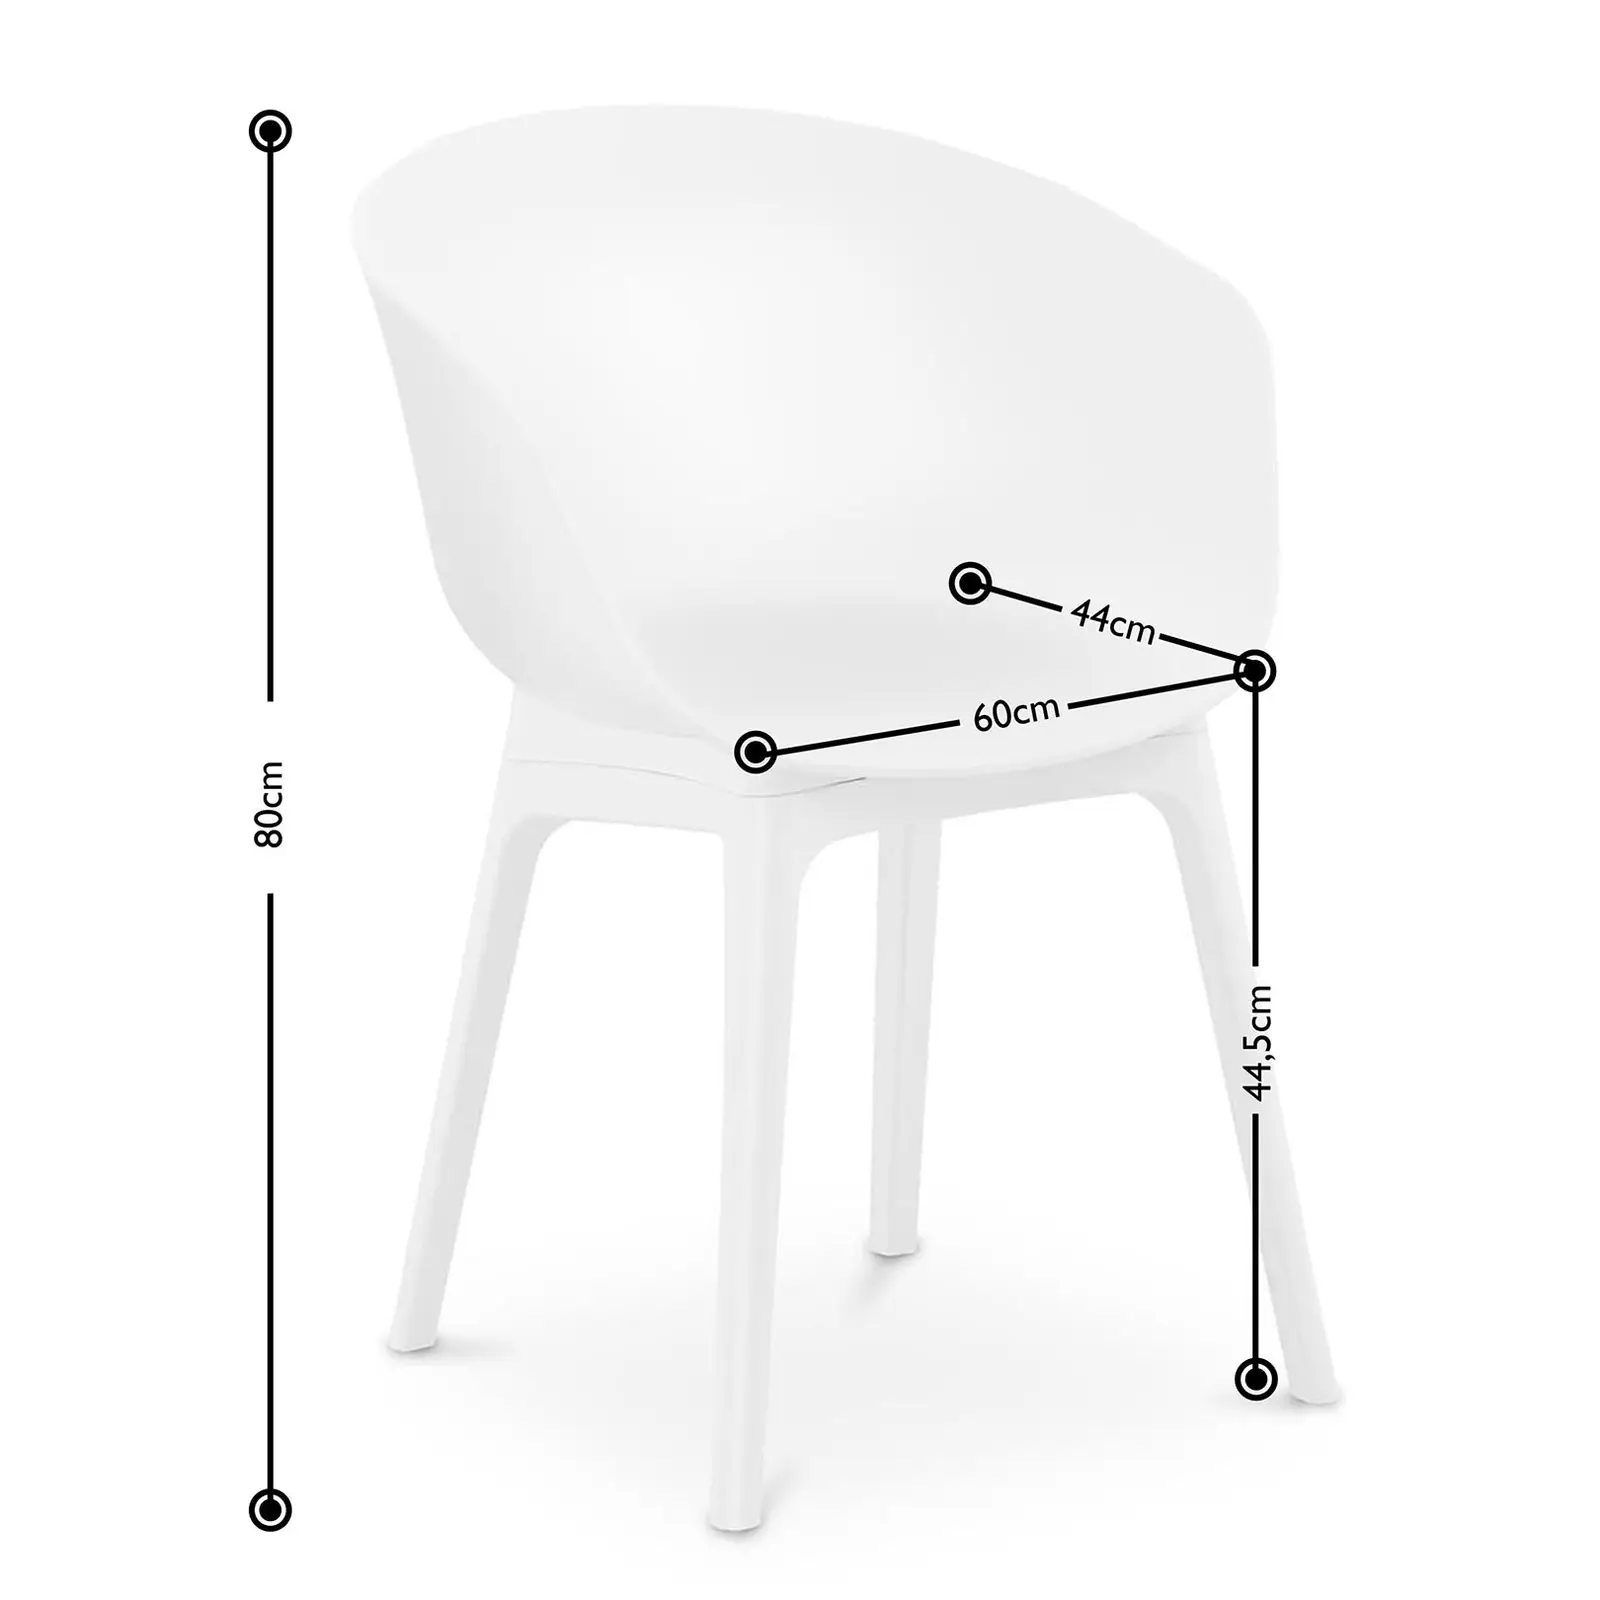 Chaise - Lot de 2 - 150 kg max. - Surface d'assise de 60 x 44 cm - Coloris blanc